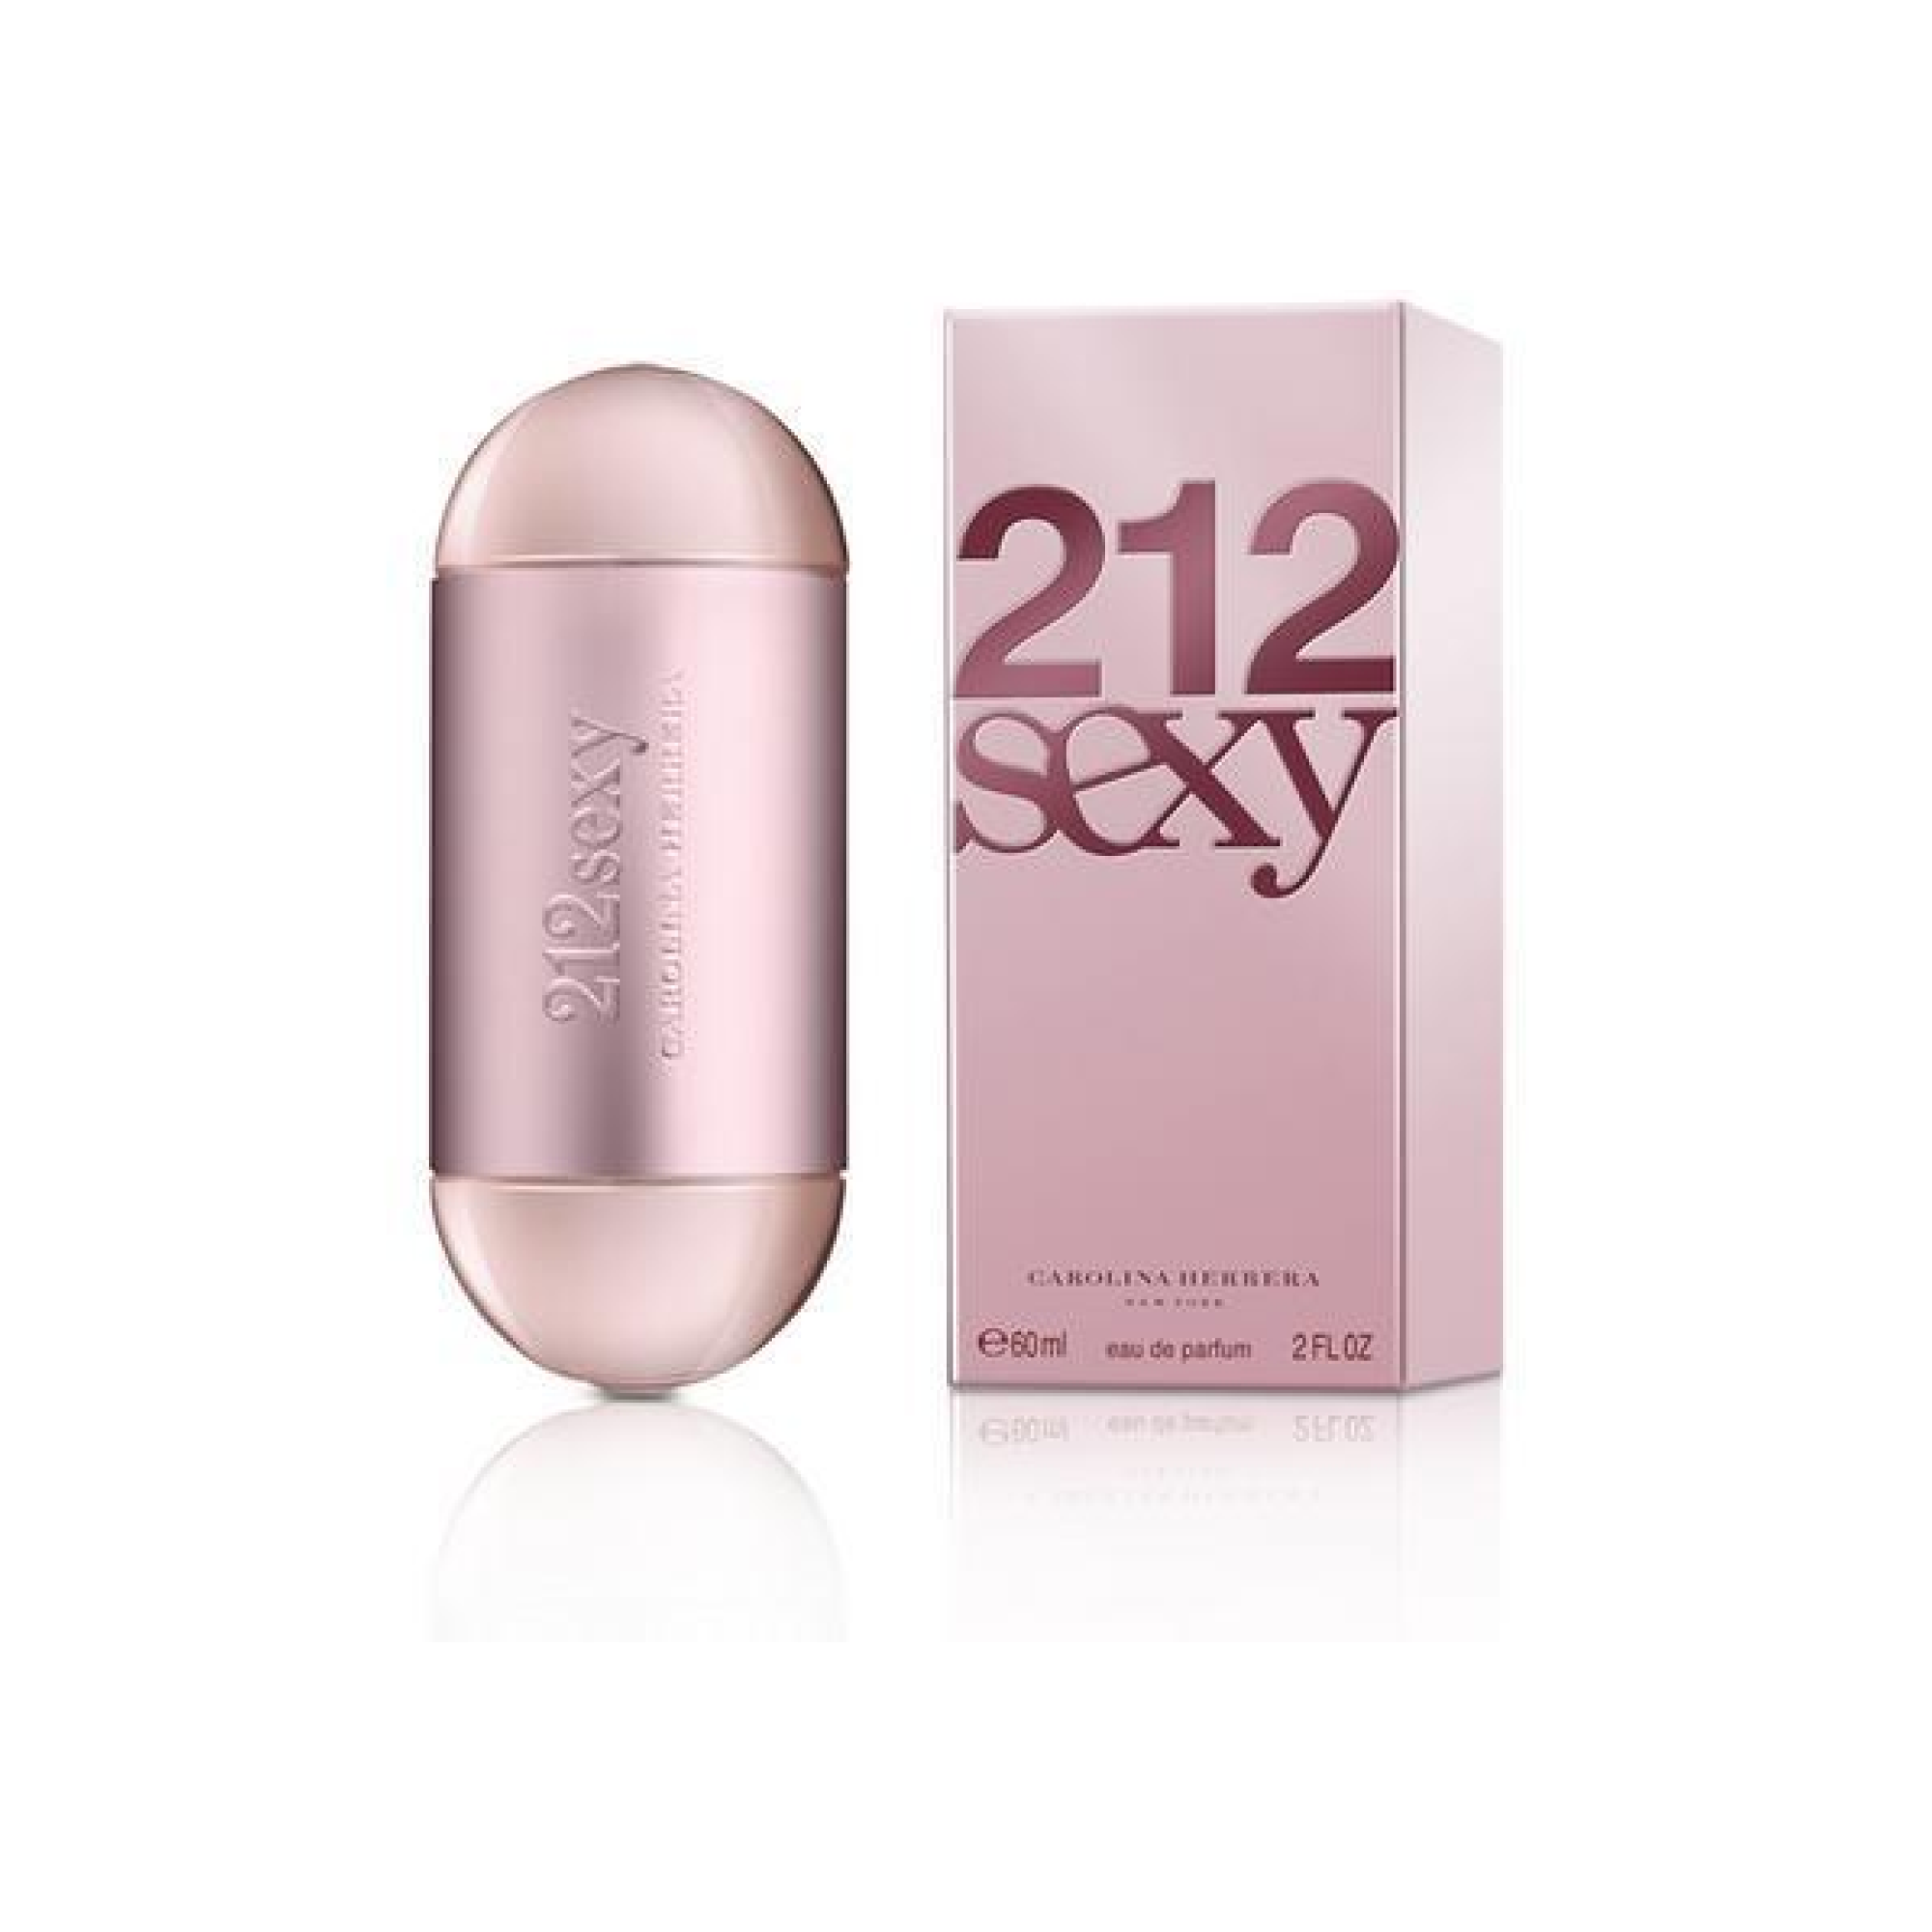 212 Sexy eau de parfum spray